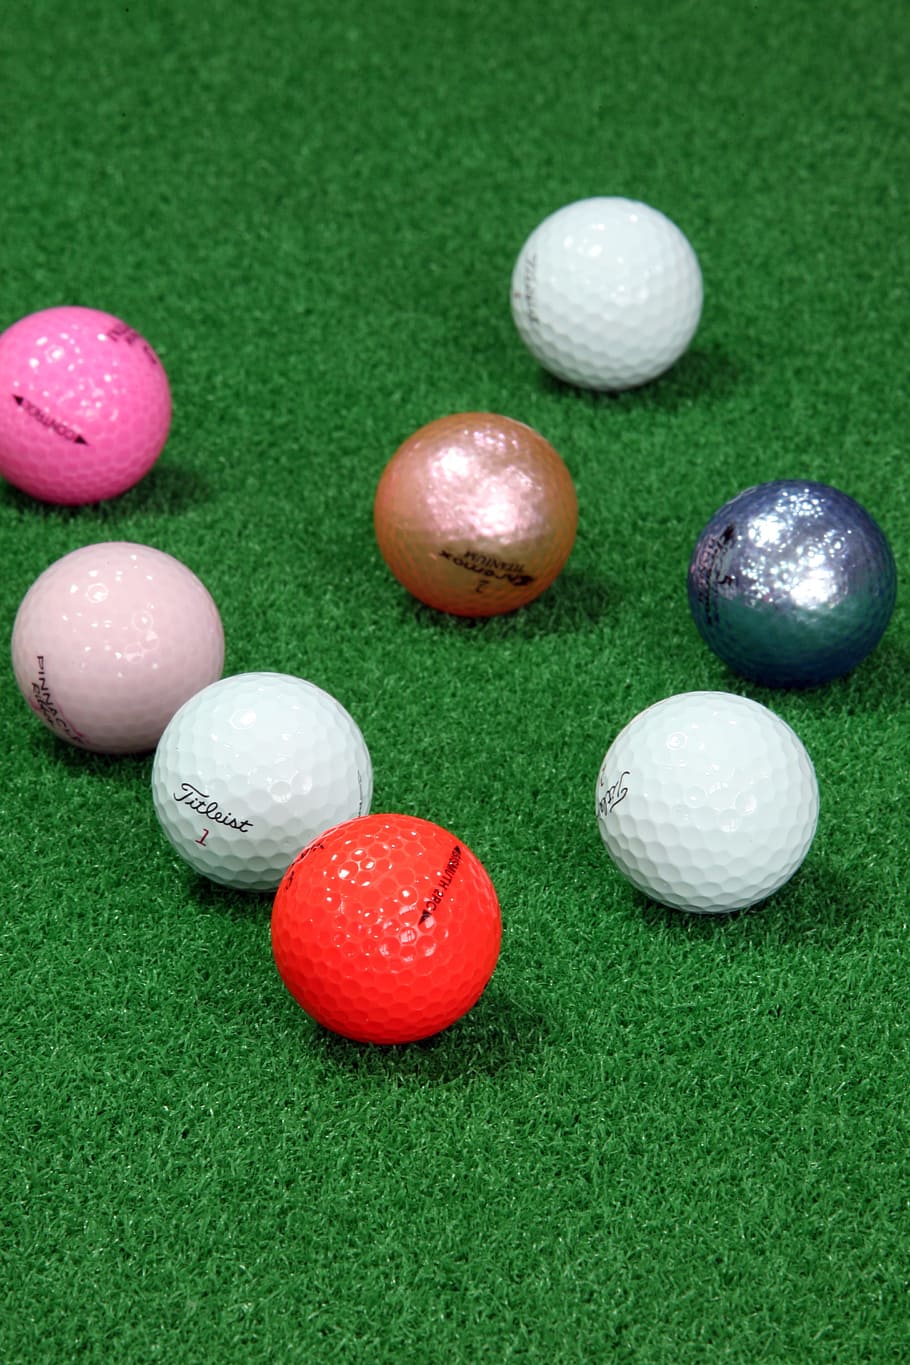 HD wallpaper: golf, golf balls, sport, grass golf balls, green color, leisure activity - Wallpaper Flare